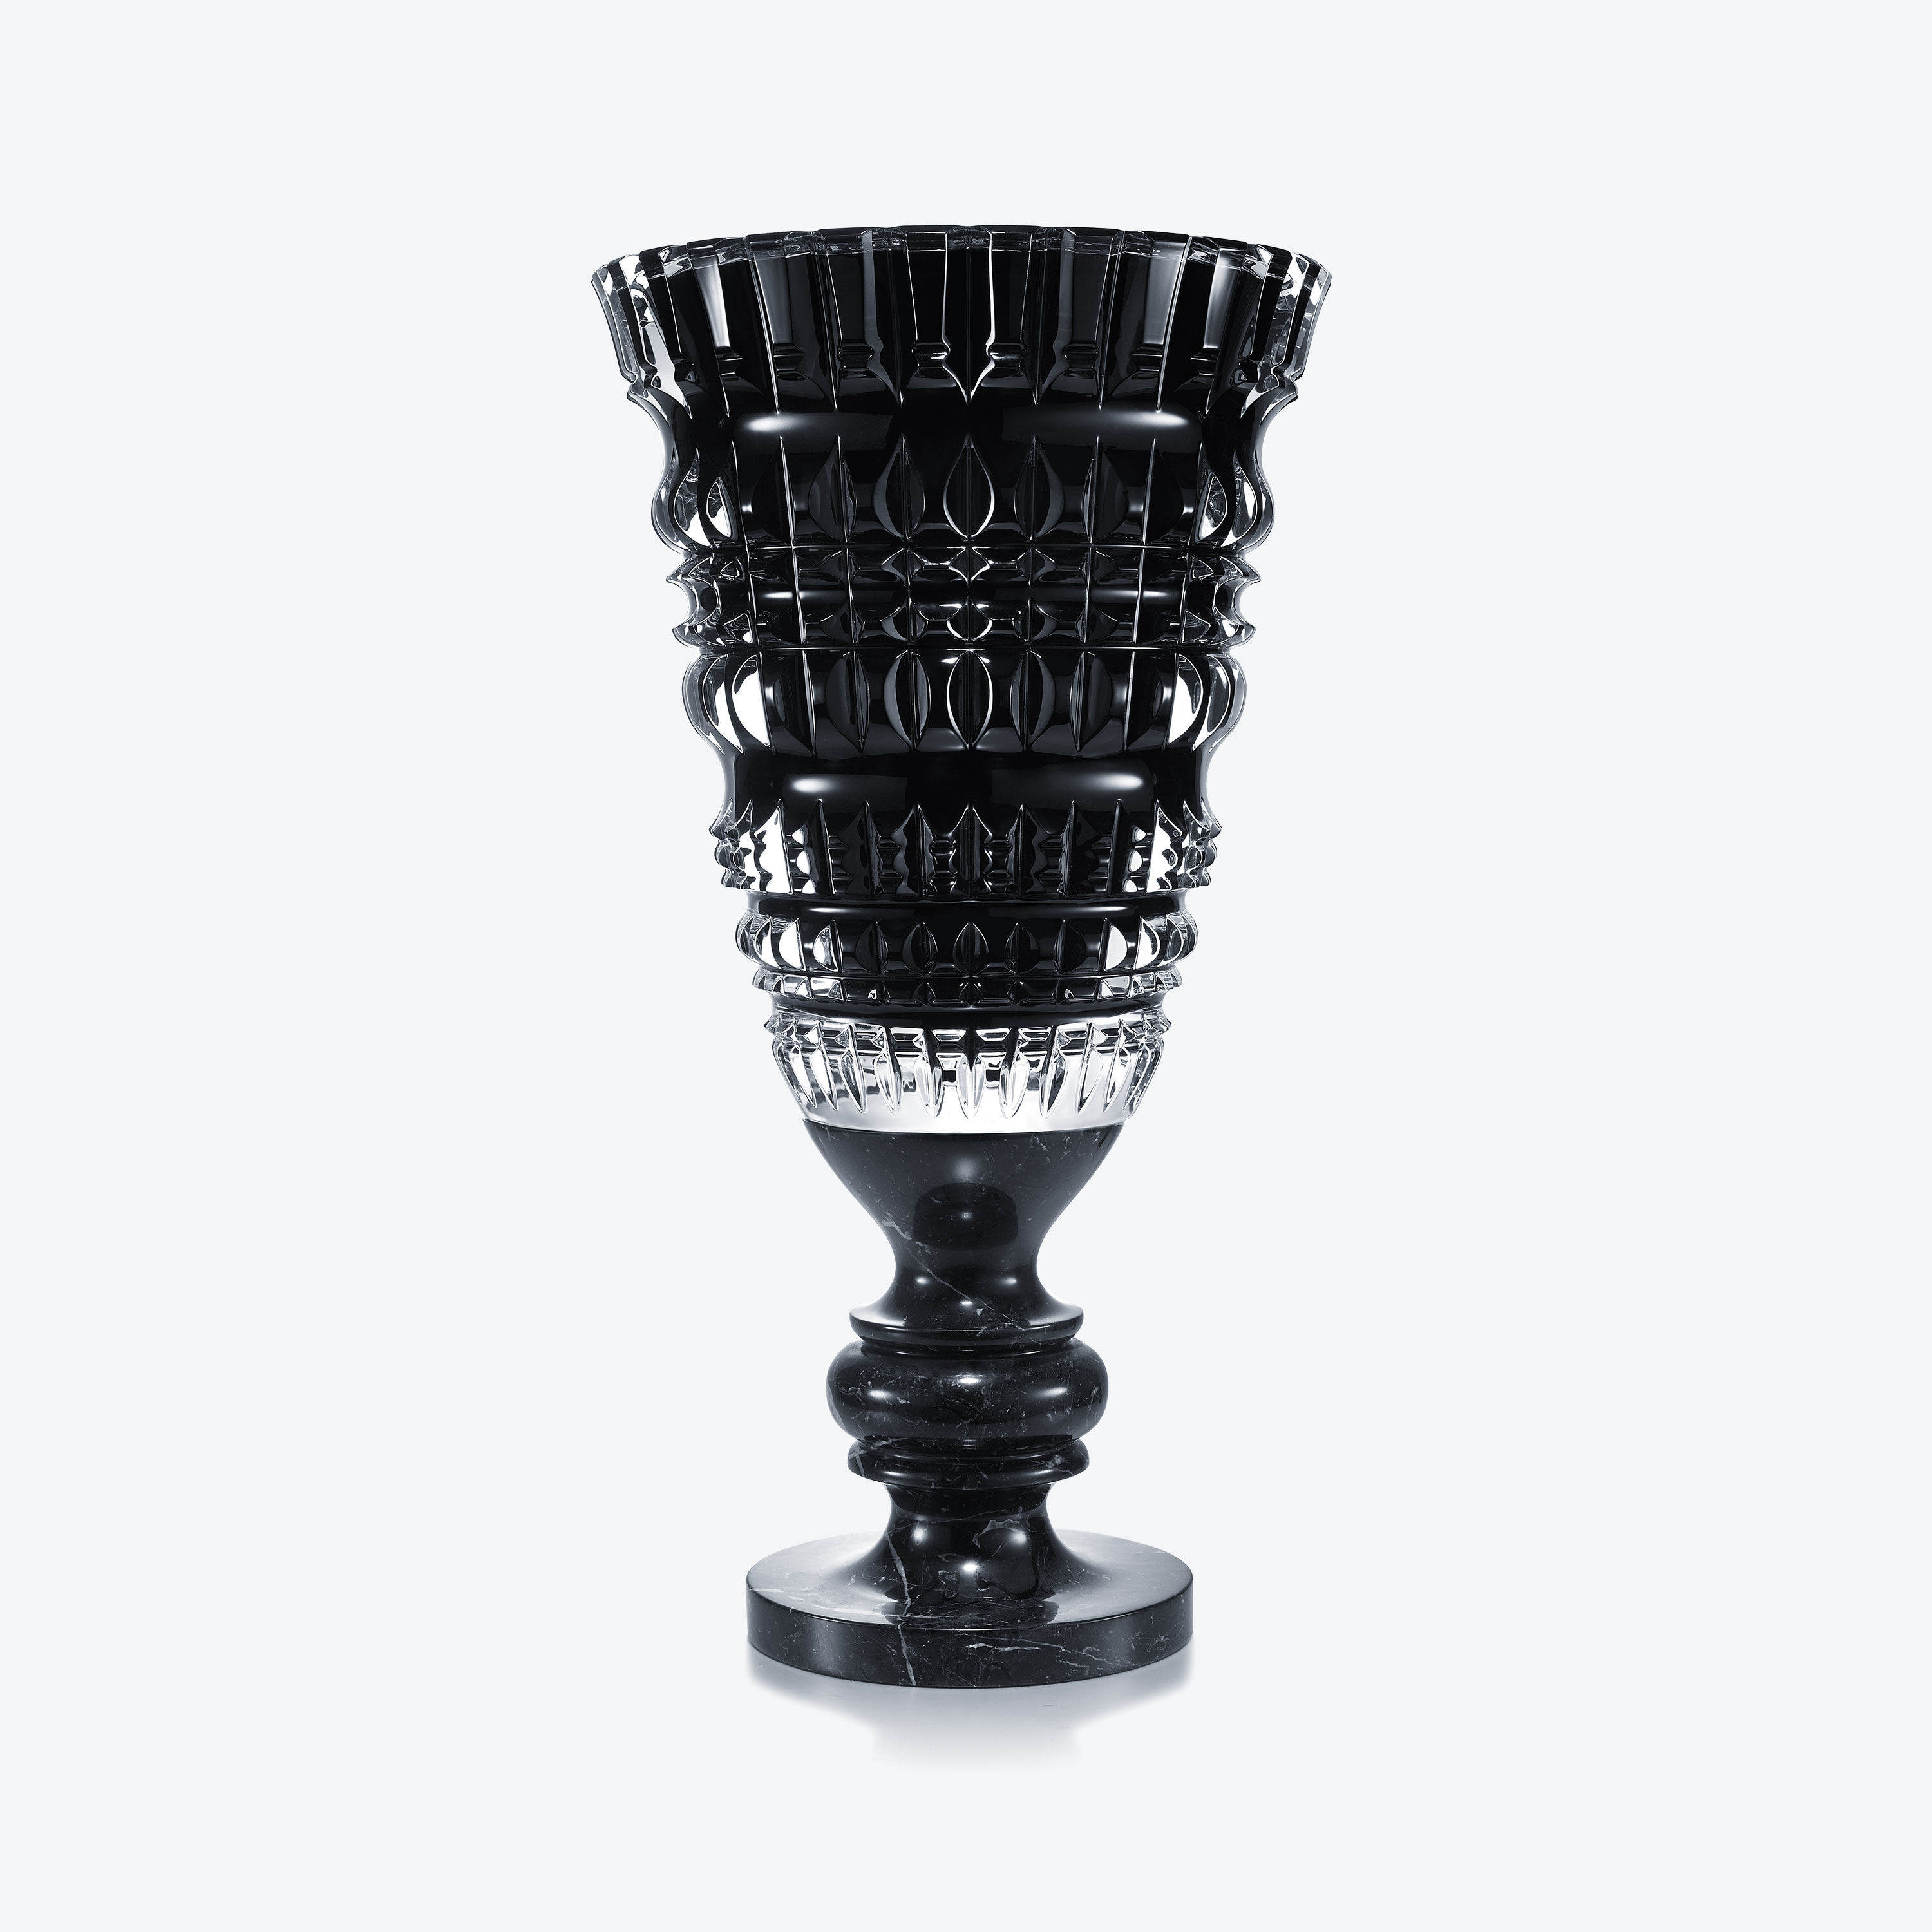 新古董花瓶MARCEL WANDERS STUDIO 马塞尔·万德斯工作室出品| 巴卡拉中国